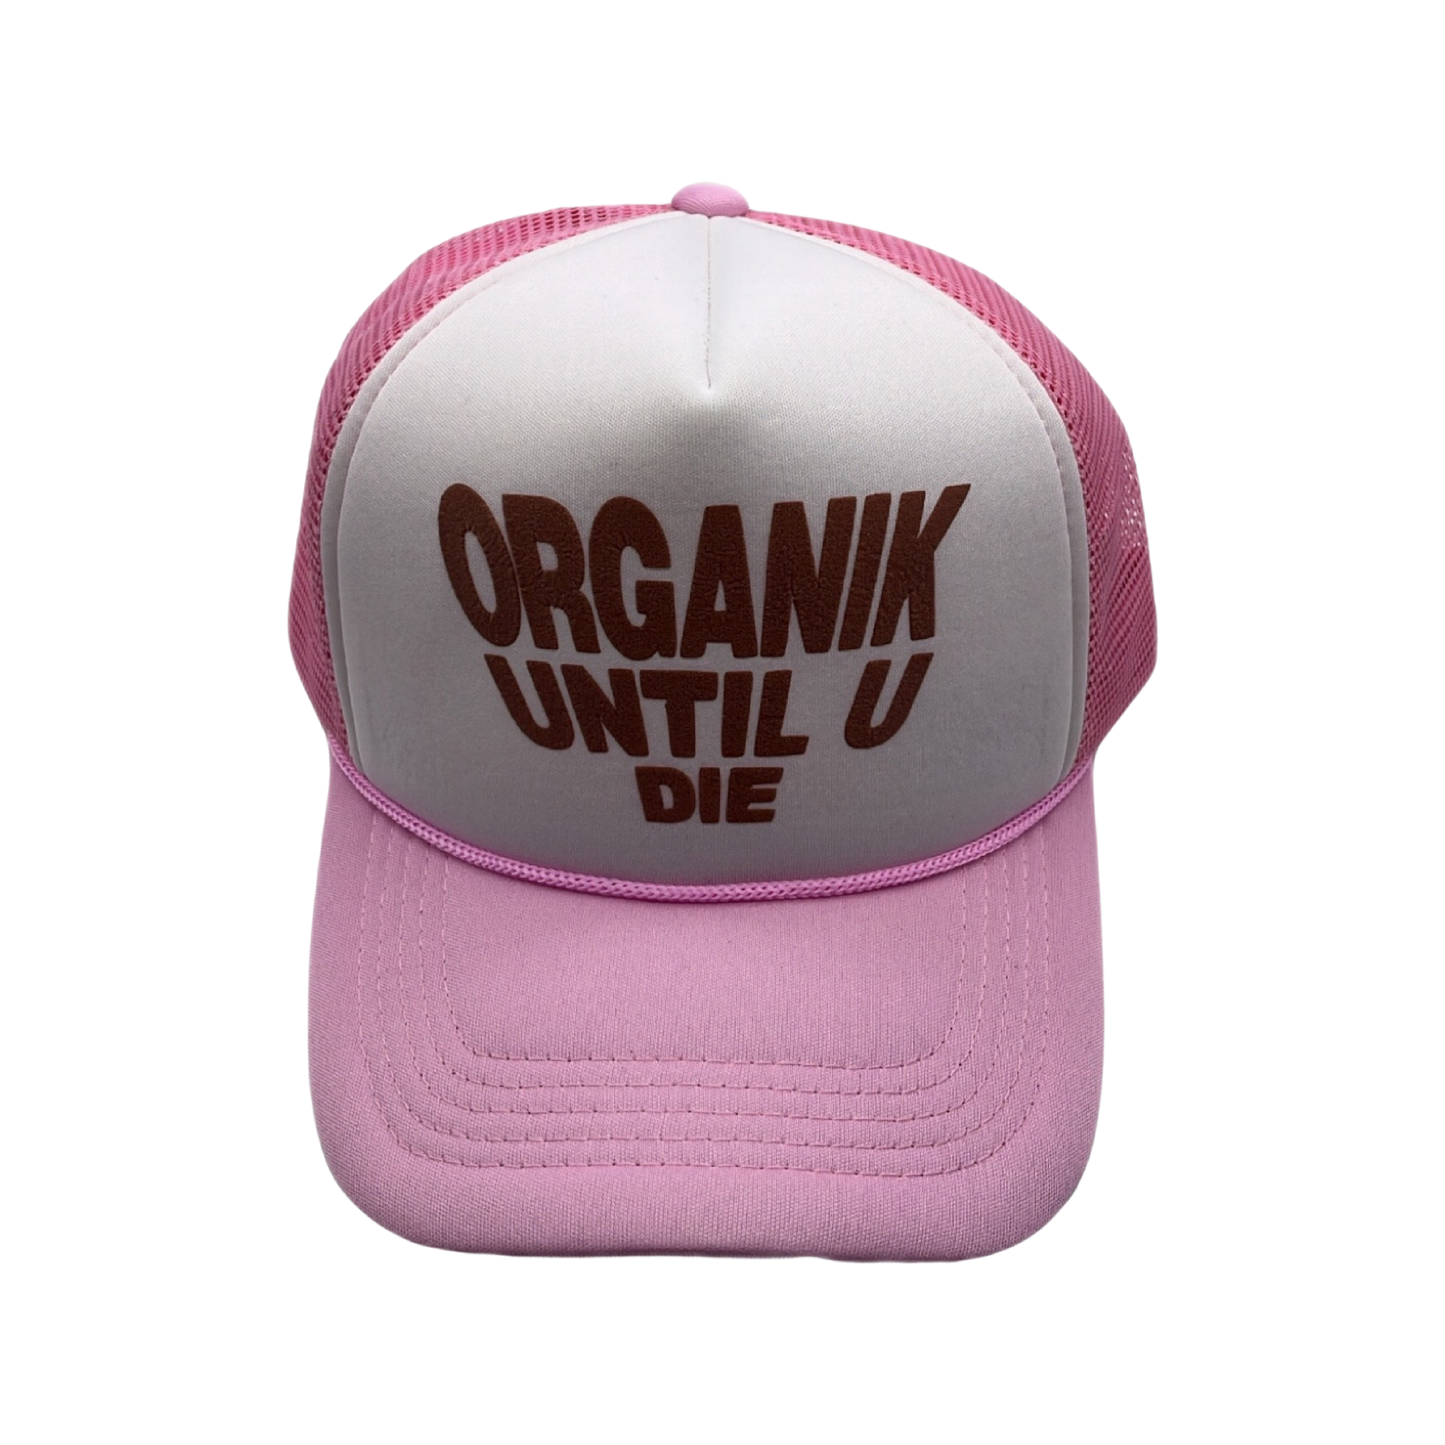 Mr. Organik and Grind Until U Die Trucker Hat Collab Pink